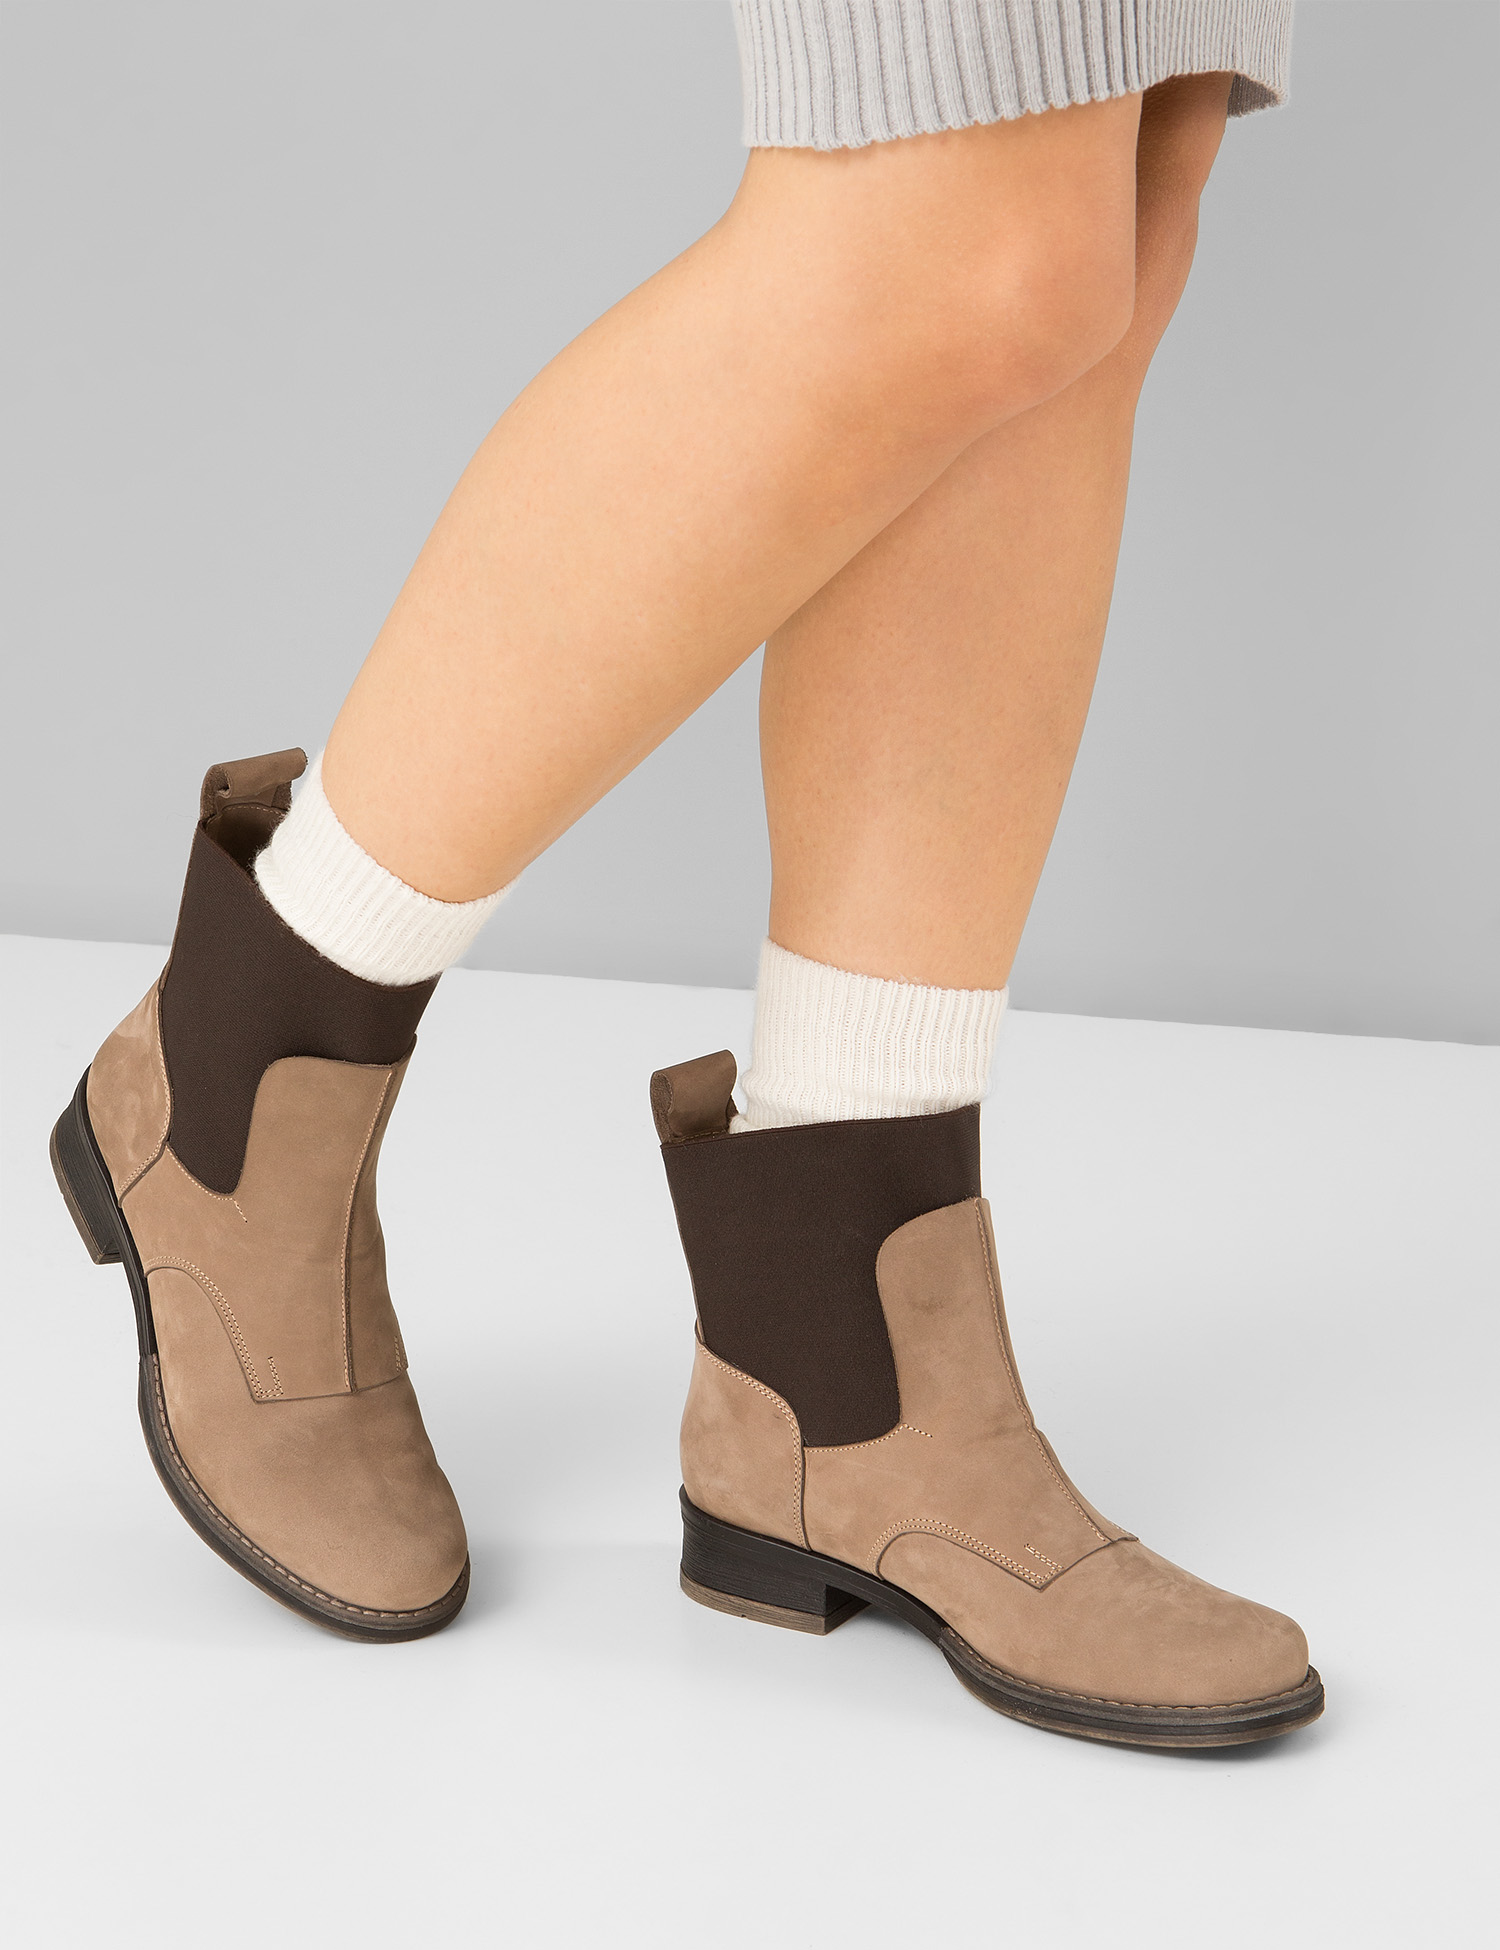 Картинка Жіночі бежеві шкіряні черевики